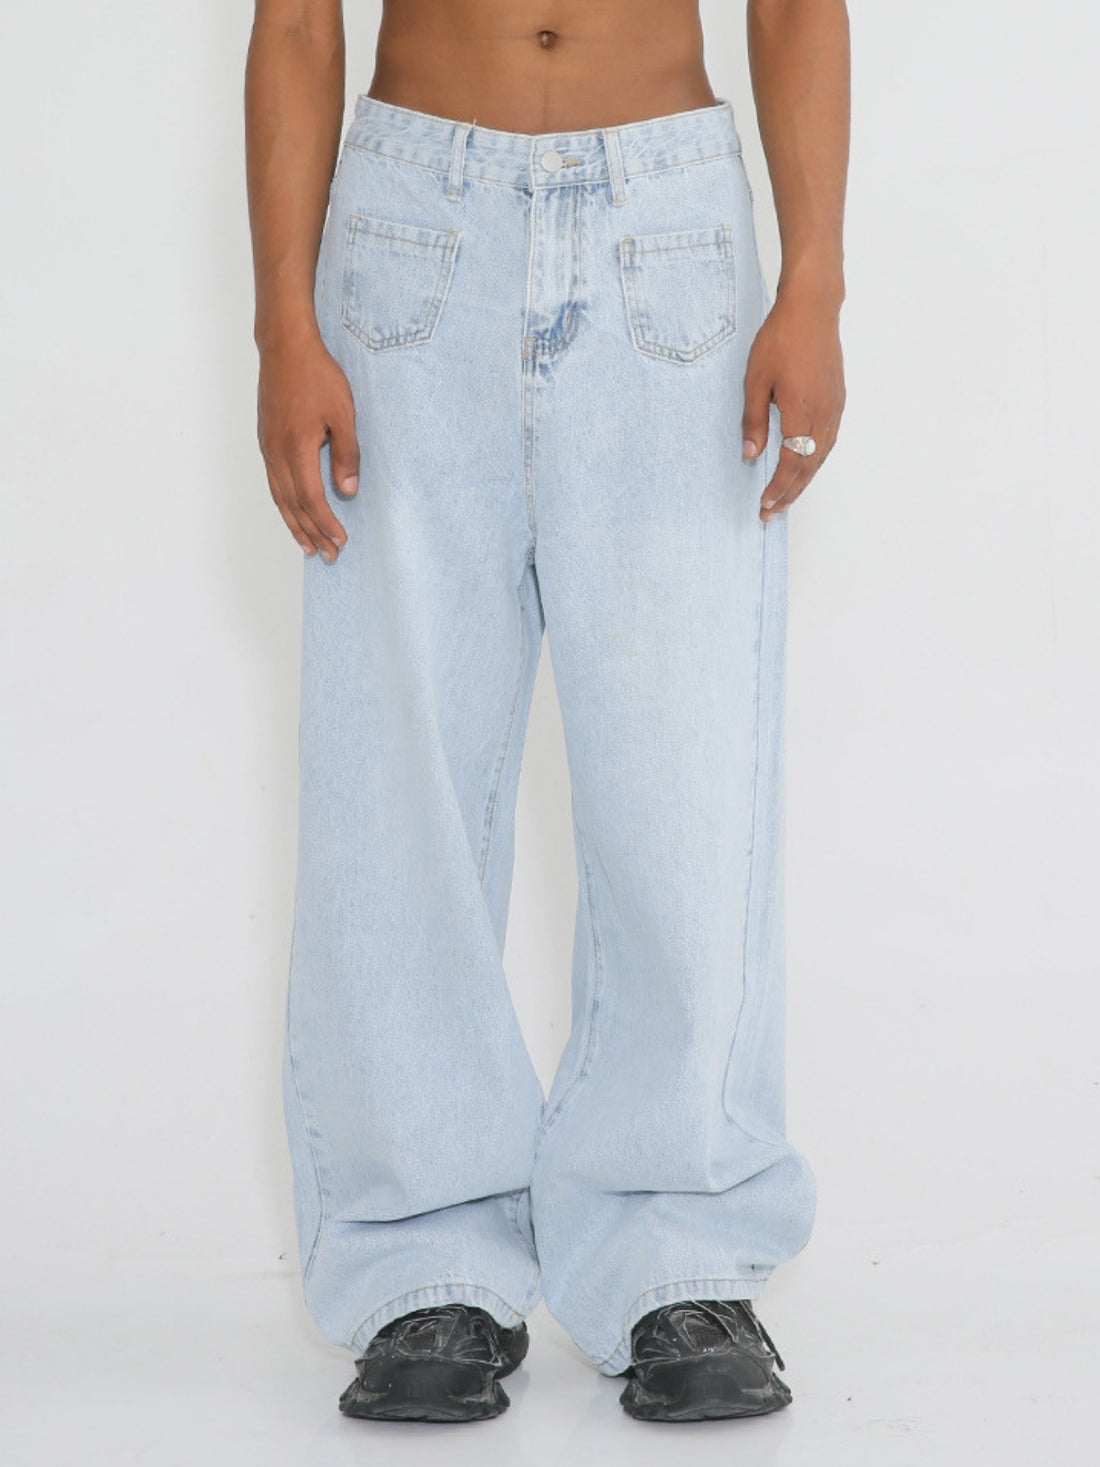 BAGPACKS - Loose Basic Jeans | Teenwear.eu